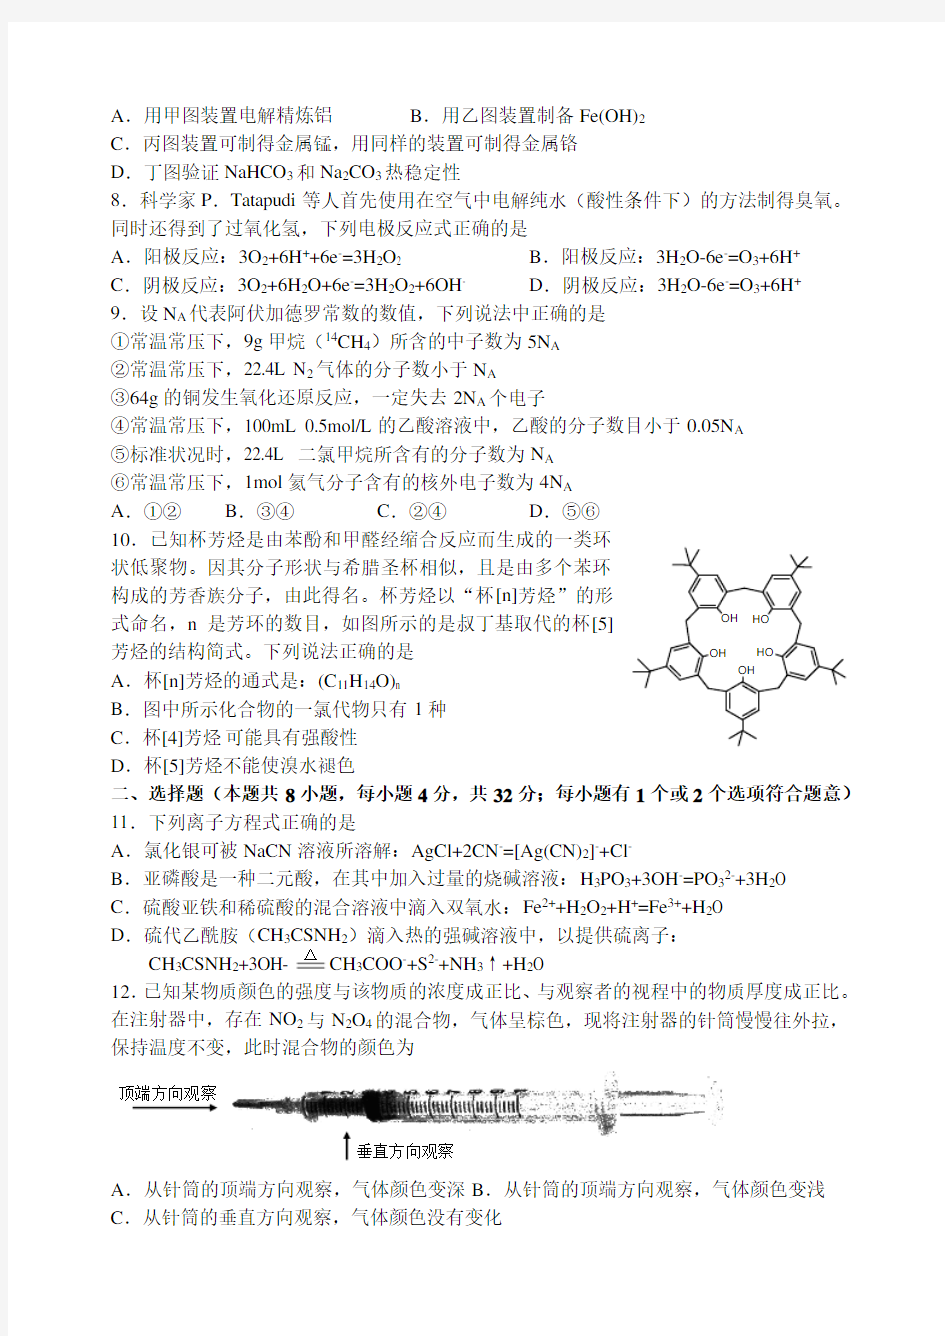 2009年浙江省中学生化学竞赛试题